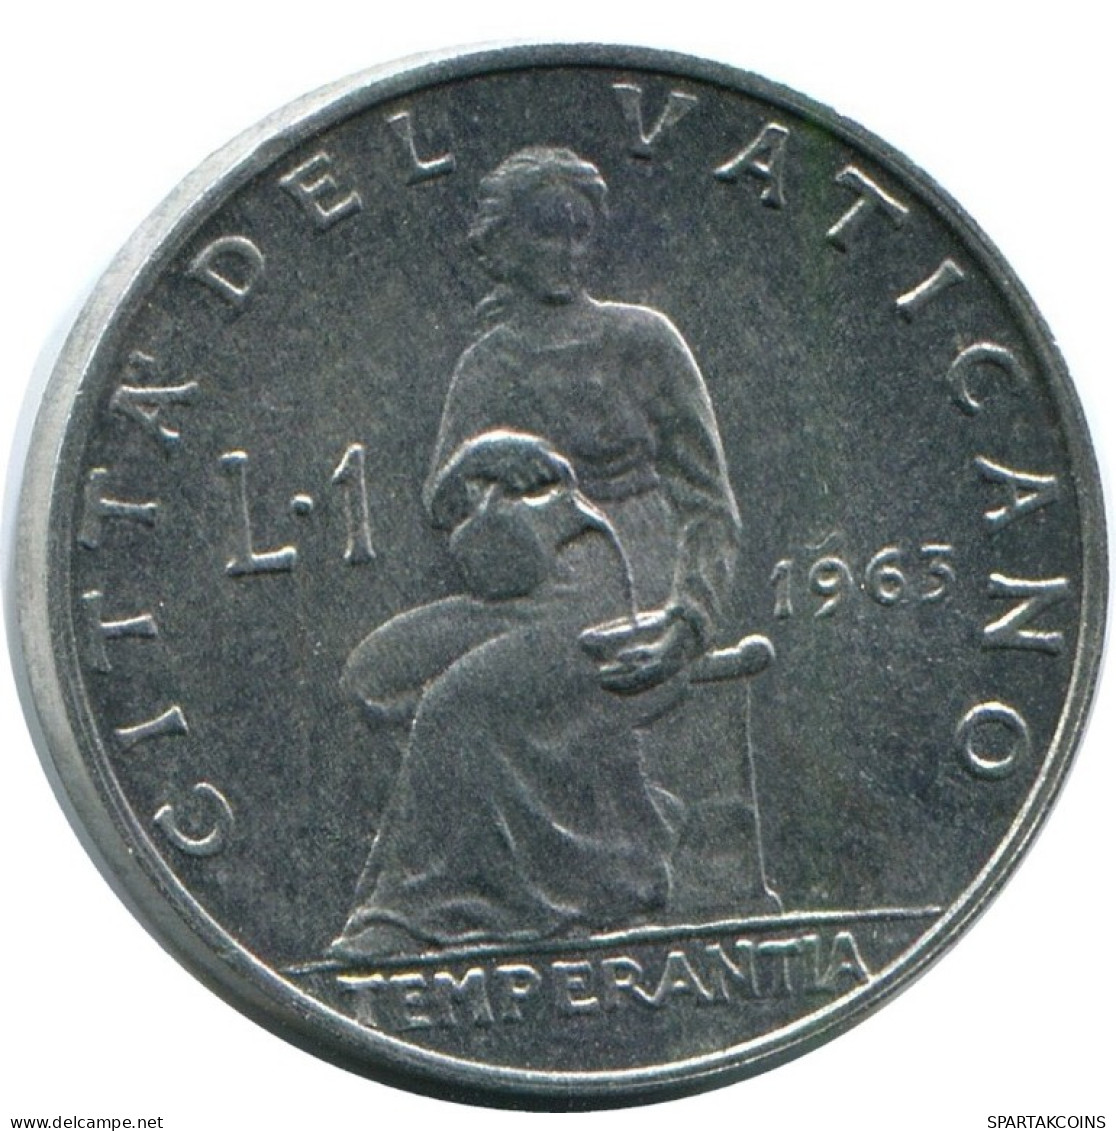 1 LIRE 1963 VATICANO VATICAN Moneda Paul VI (1963-1978) #AH380.13.E.A - Vaticano (Ciudad Del)